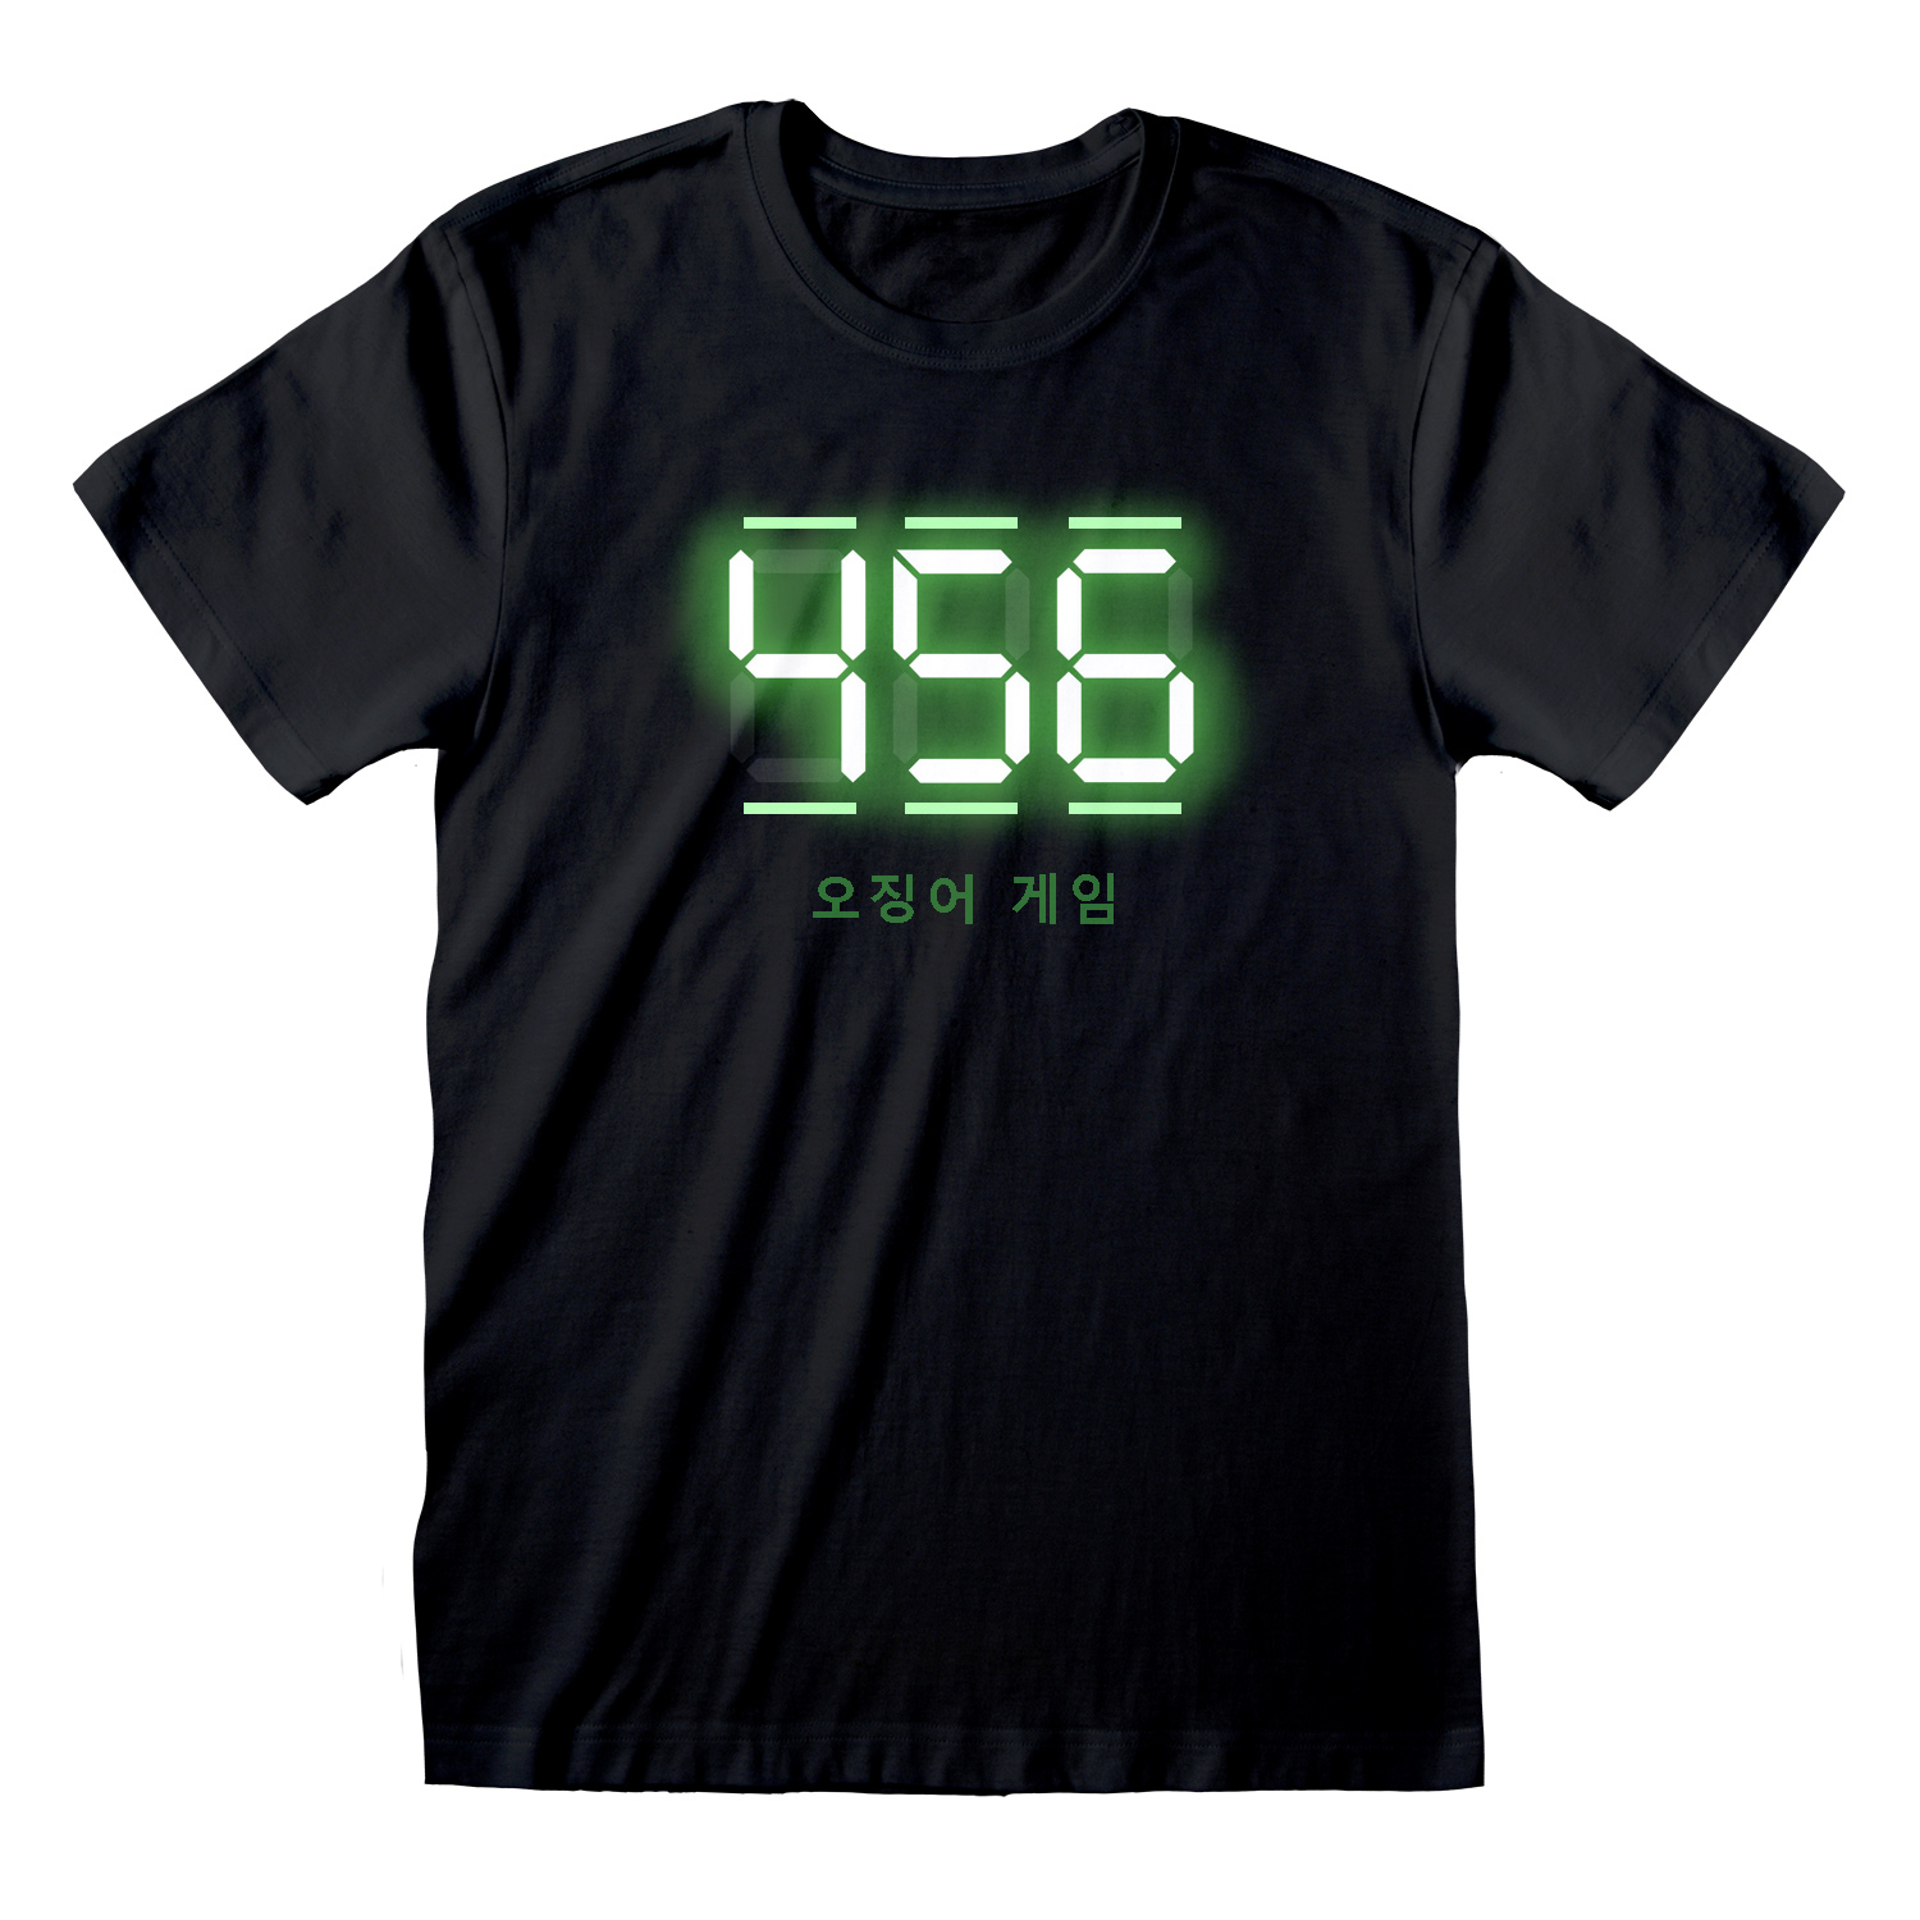 Squid Game - T-shirt unisexe Noir Texte numérique 456 - M